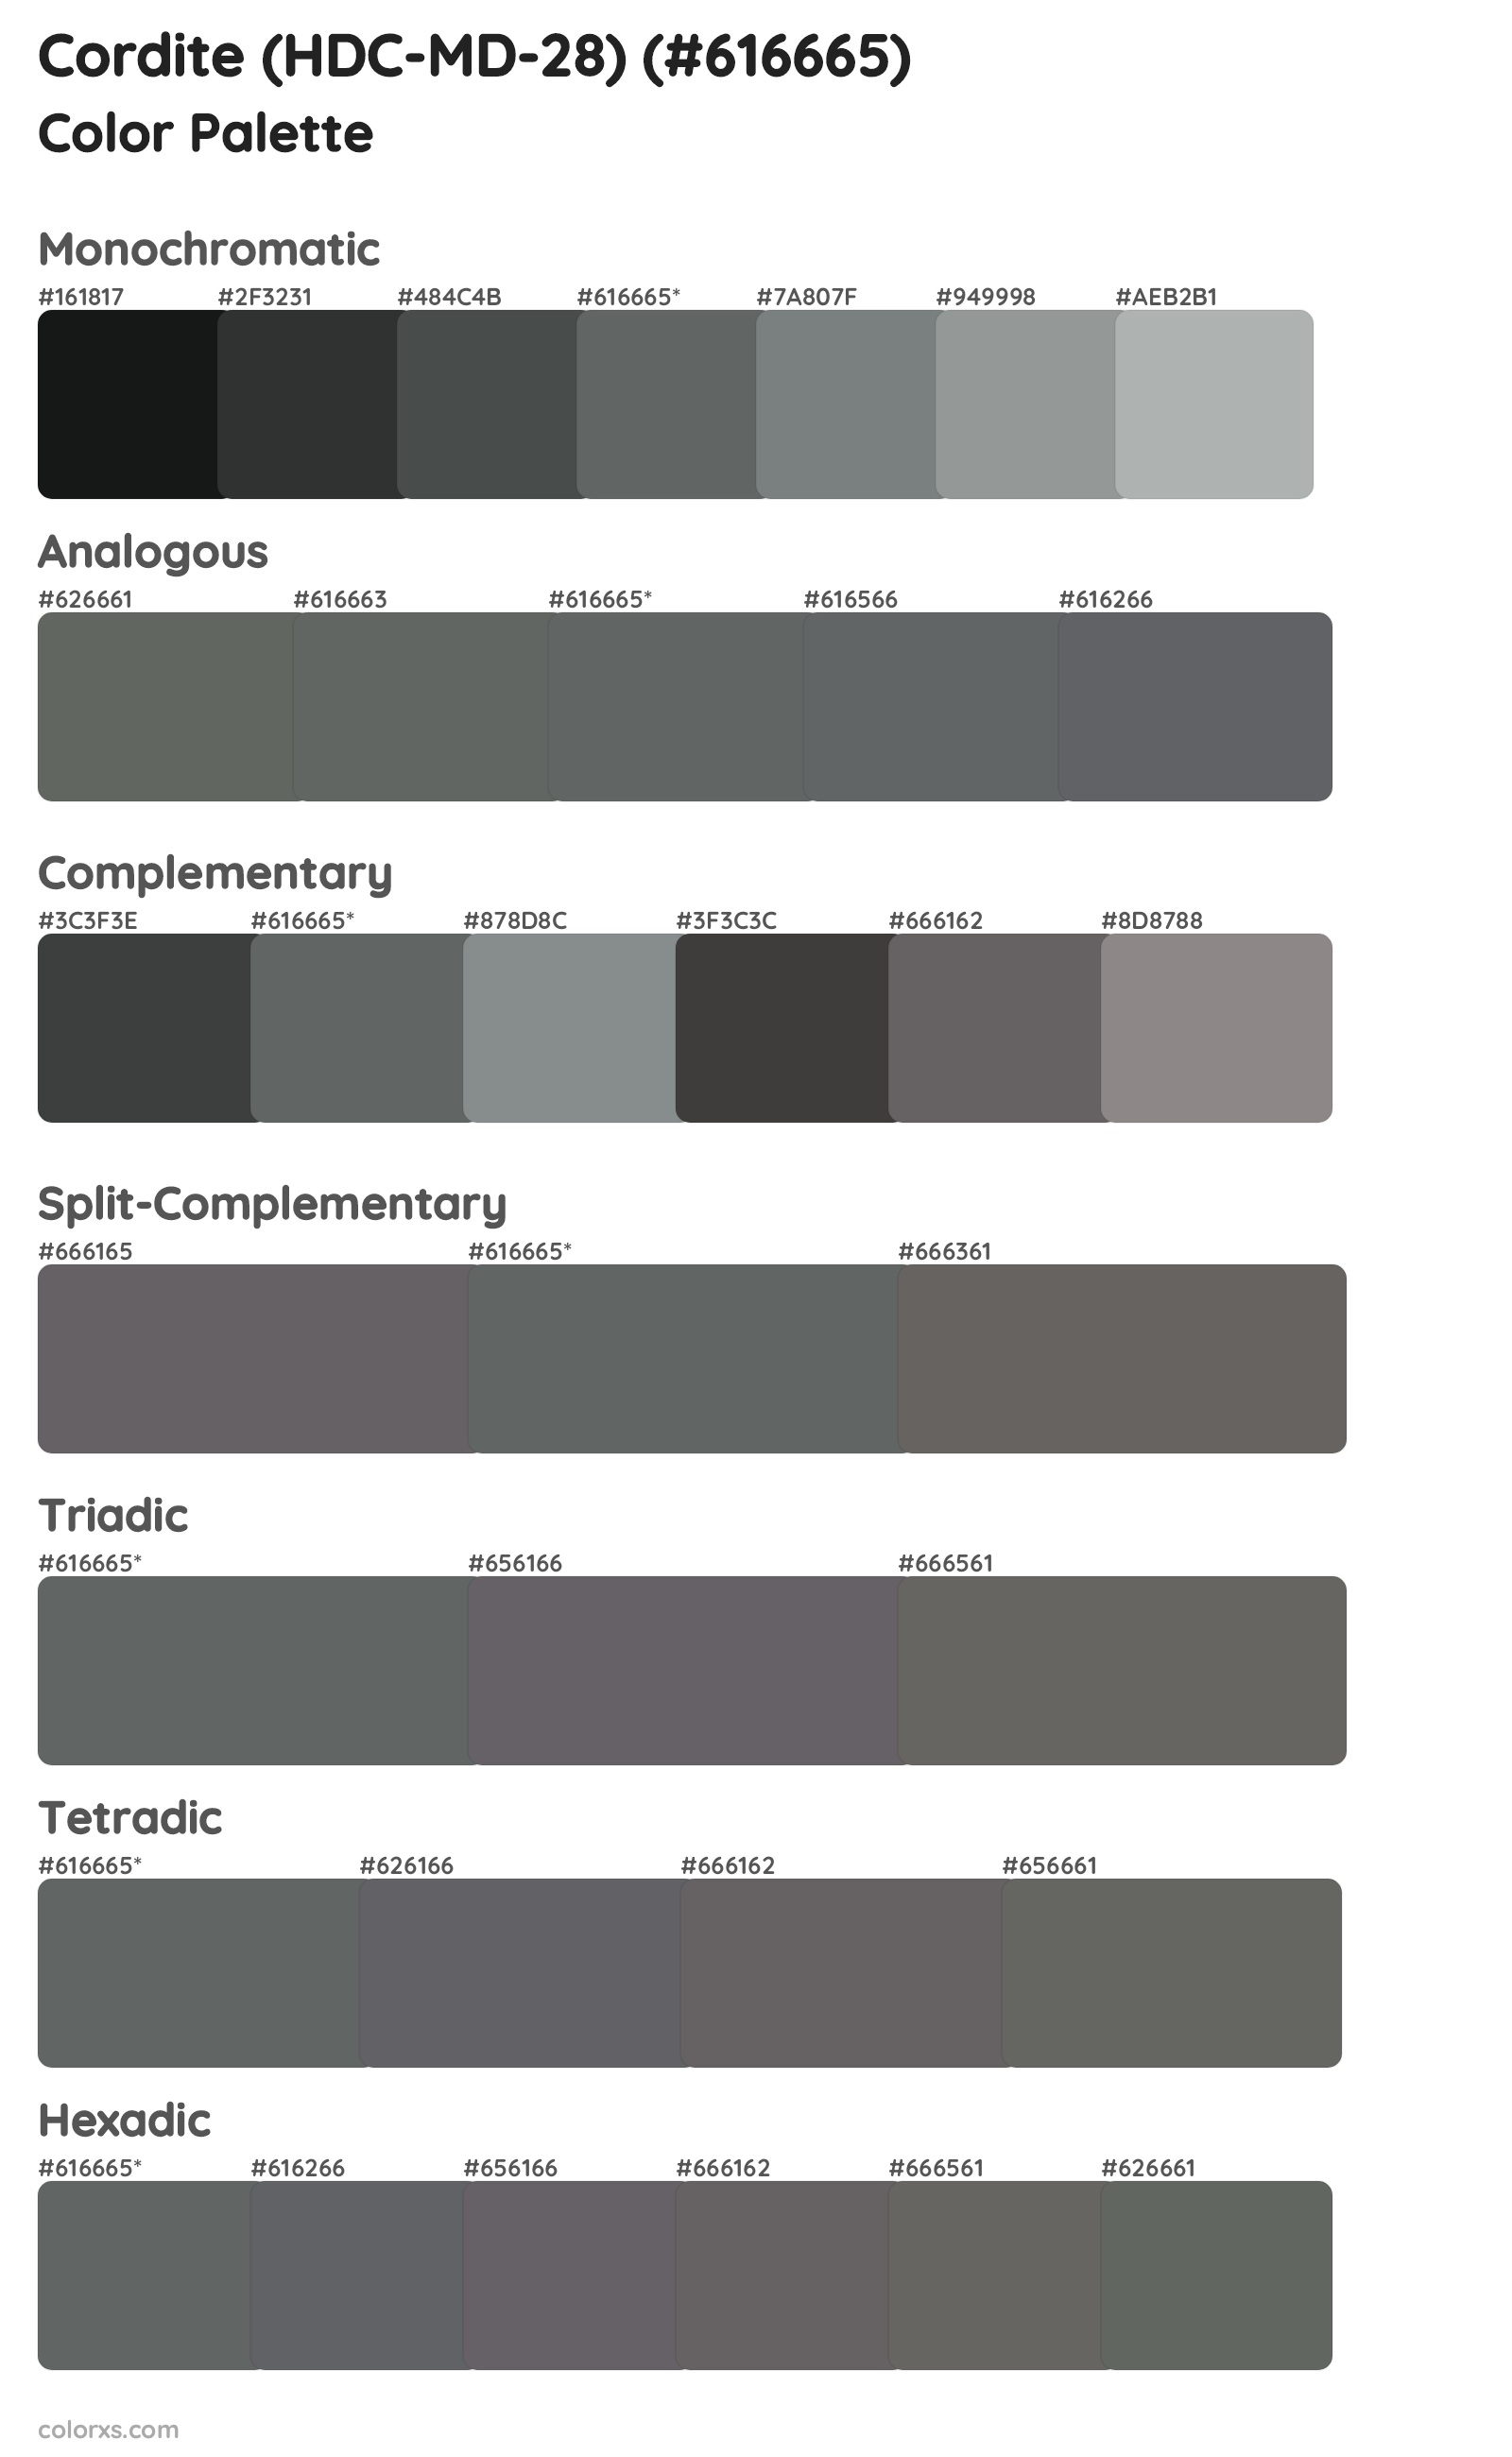 Cordite (HDC-MD-28) Color Scheme Palettes